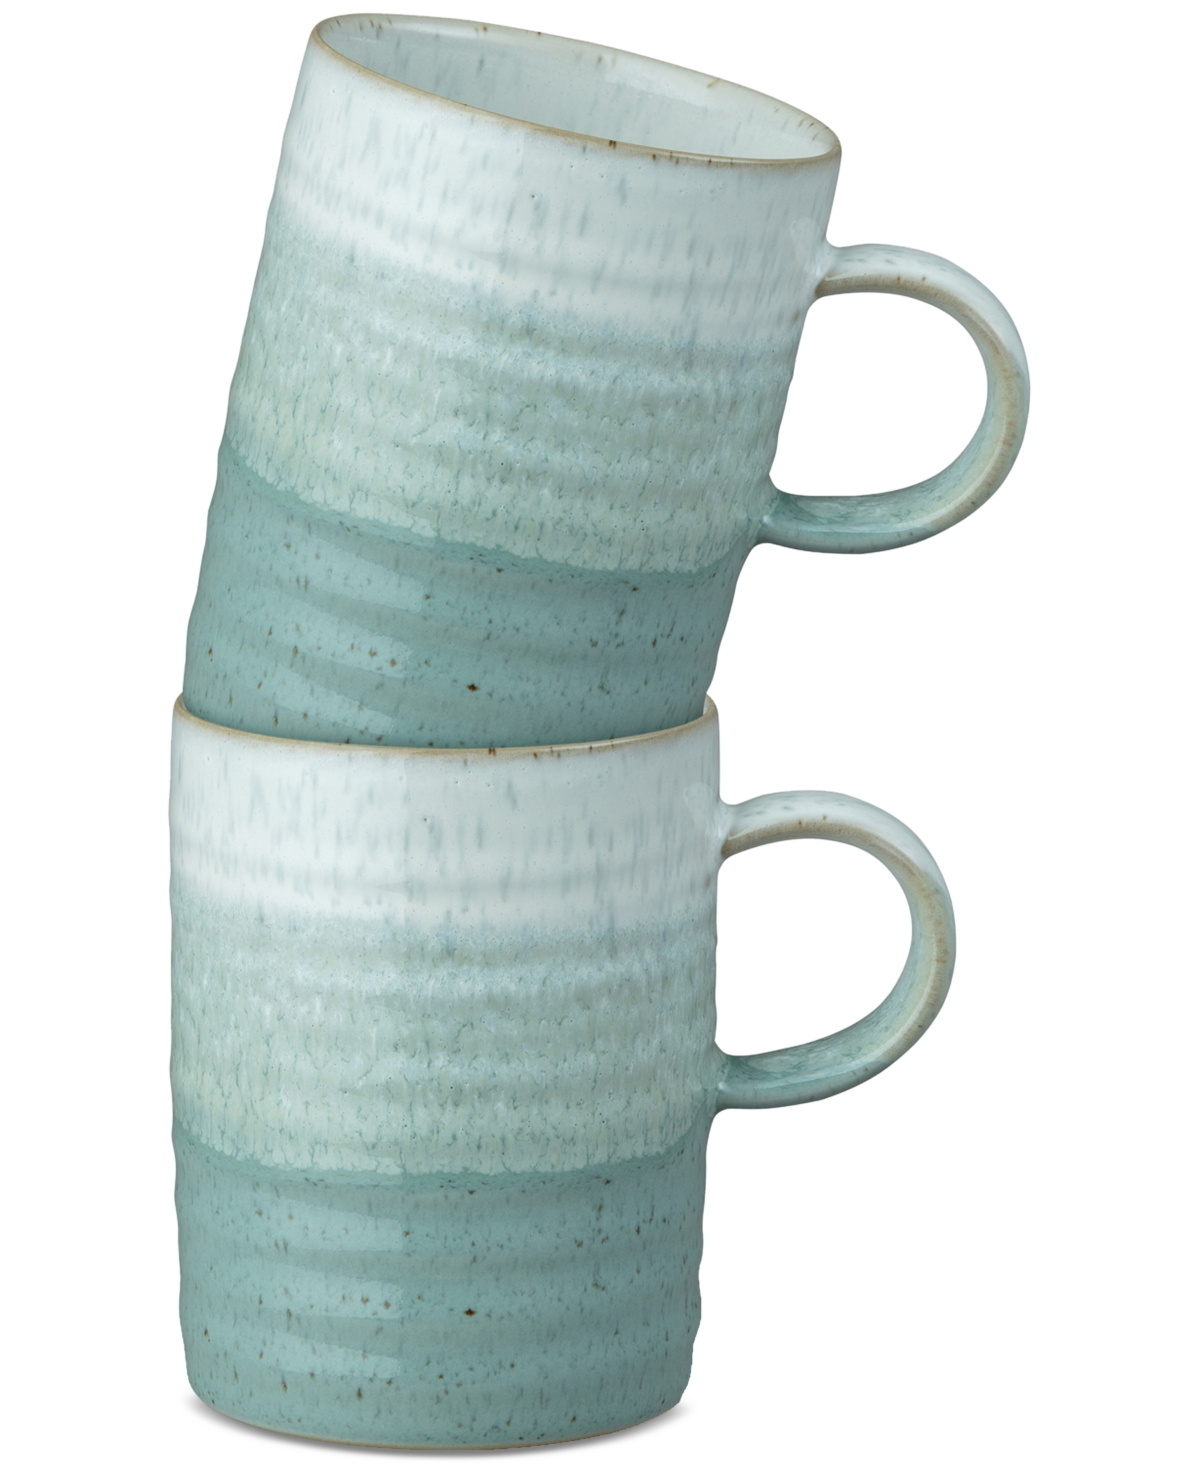 Kiln Collection Stoneware Mugs, Set of 2 - Light Gree